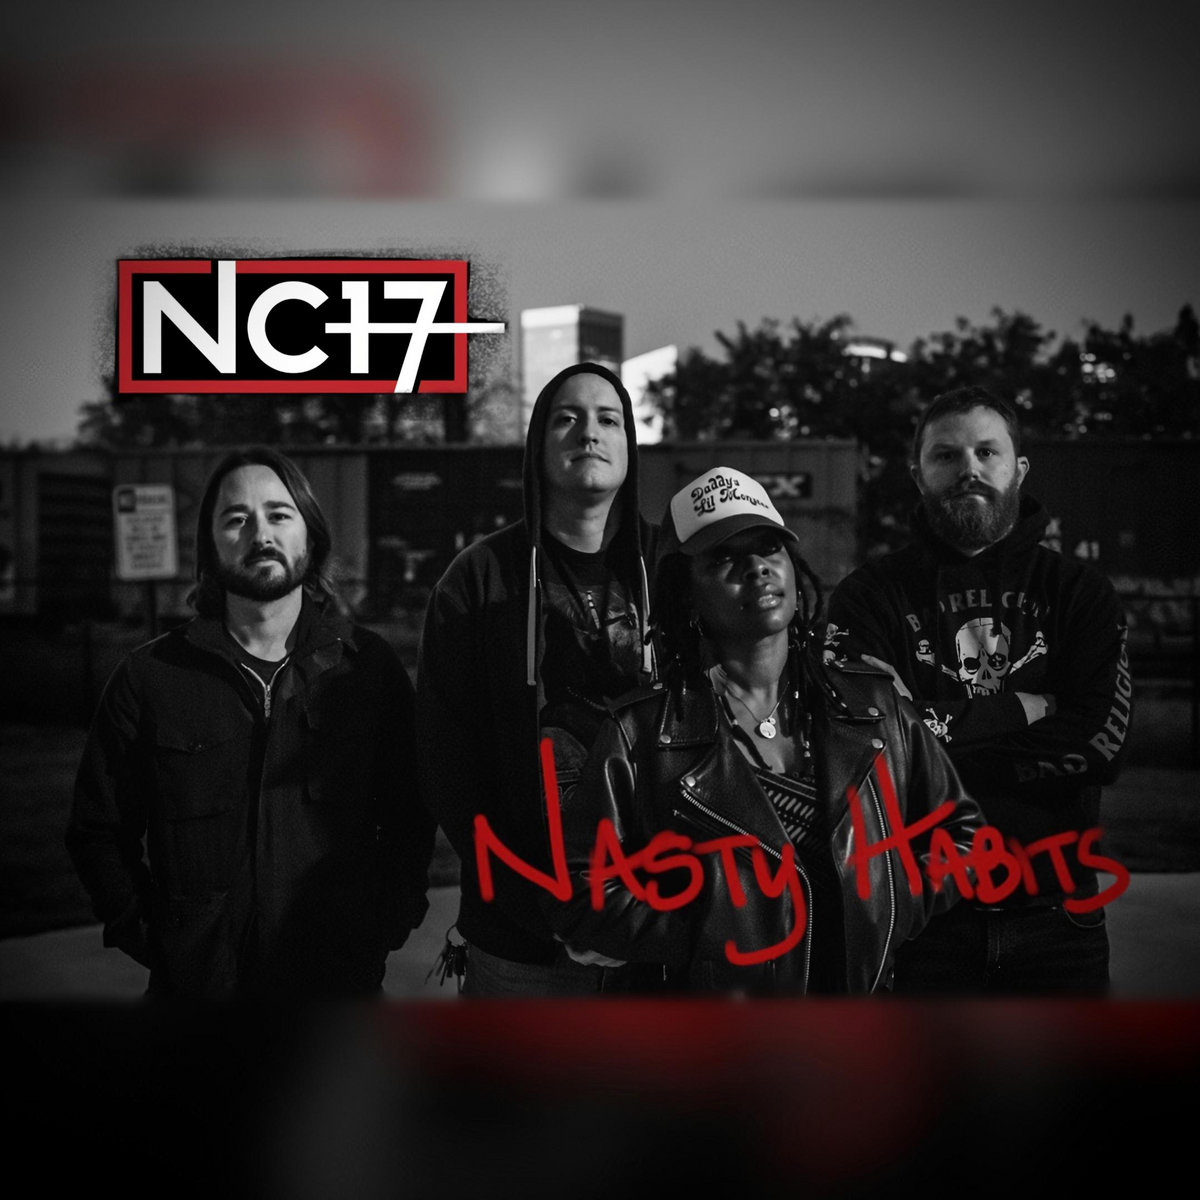 Introducing: Nc17